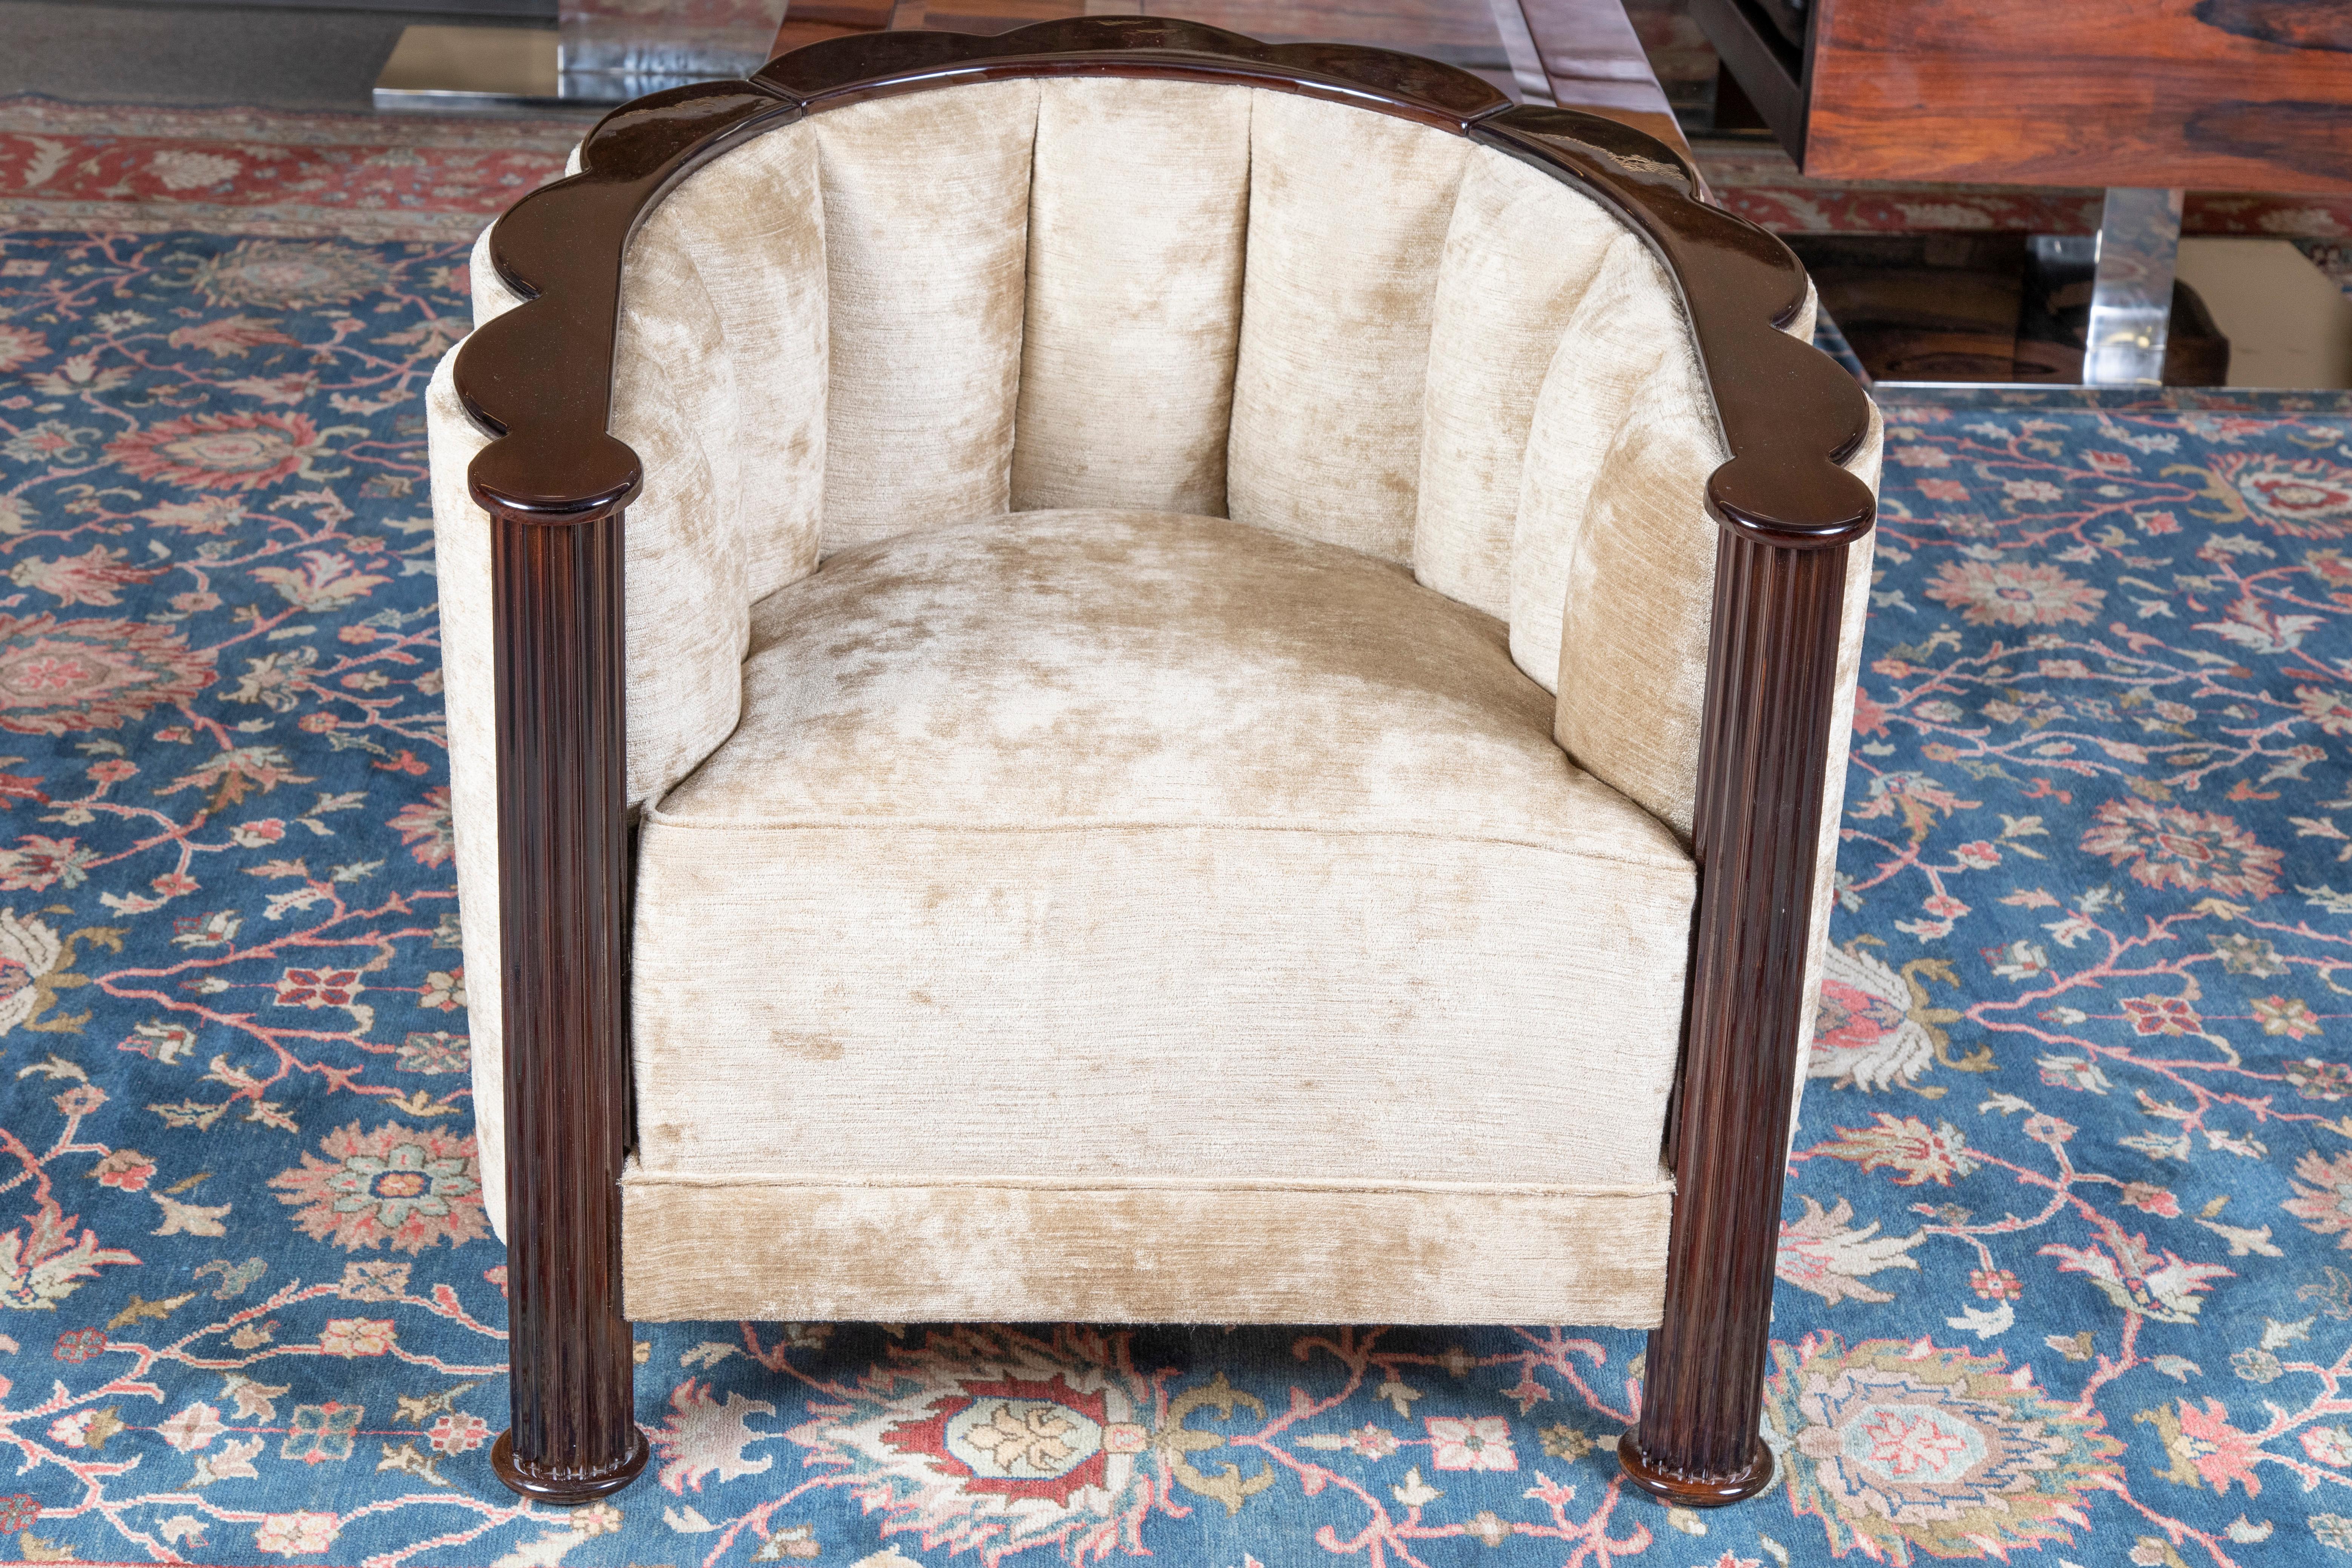 Stuhl ist  aus feinem Walnussholz.
Neu gepolstert mit hellbeigem, samtigem Stoff.
Die Rückenlehne des Stuhls ist halbkreisförmig gebaut. Auf der Oberseite der Rückenlehne befindet sich eine dunkle Holzleiste 
Der Stuhl wird durch 4 kleine